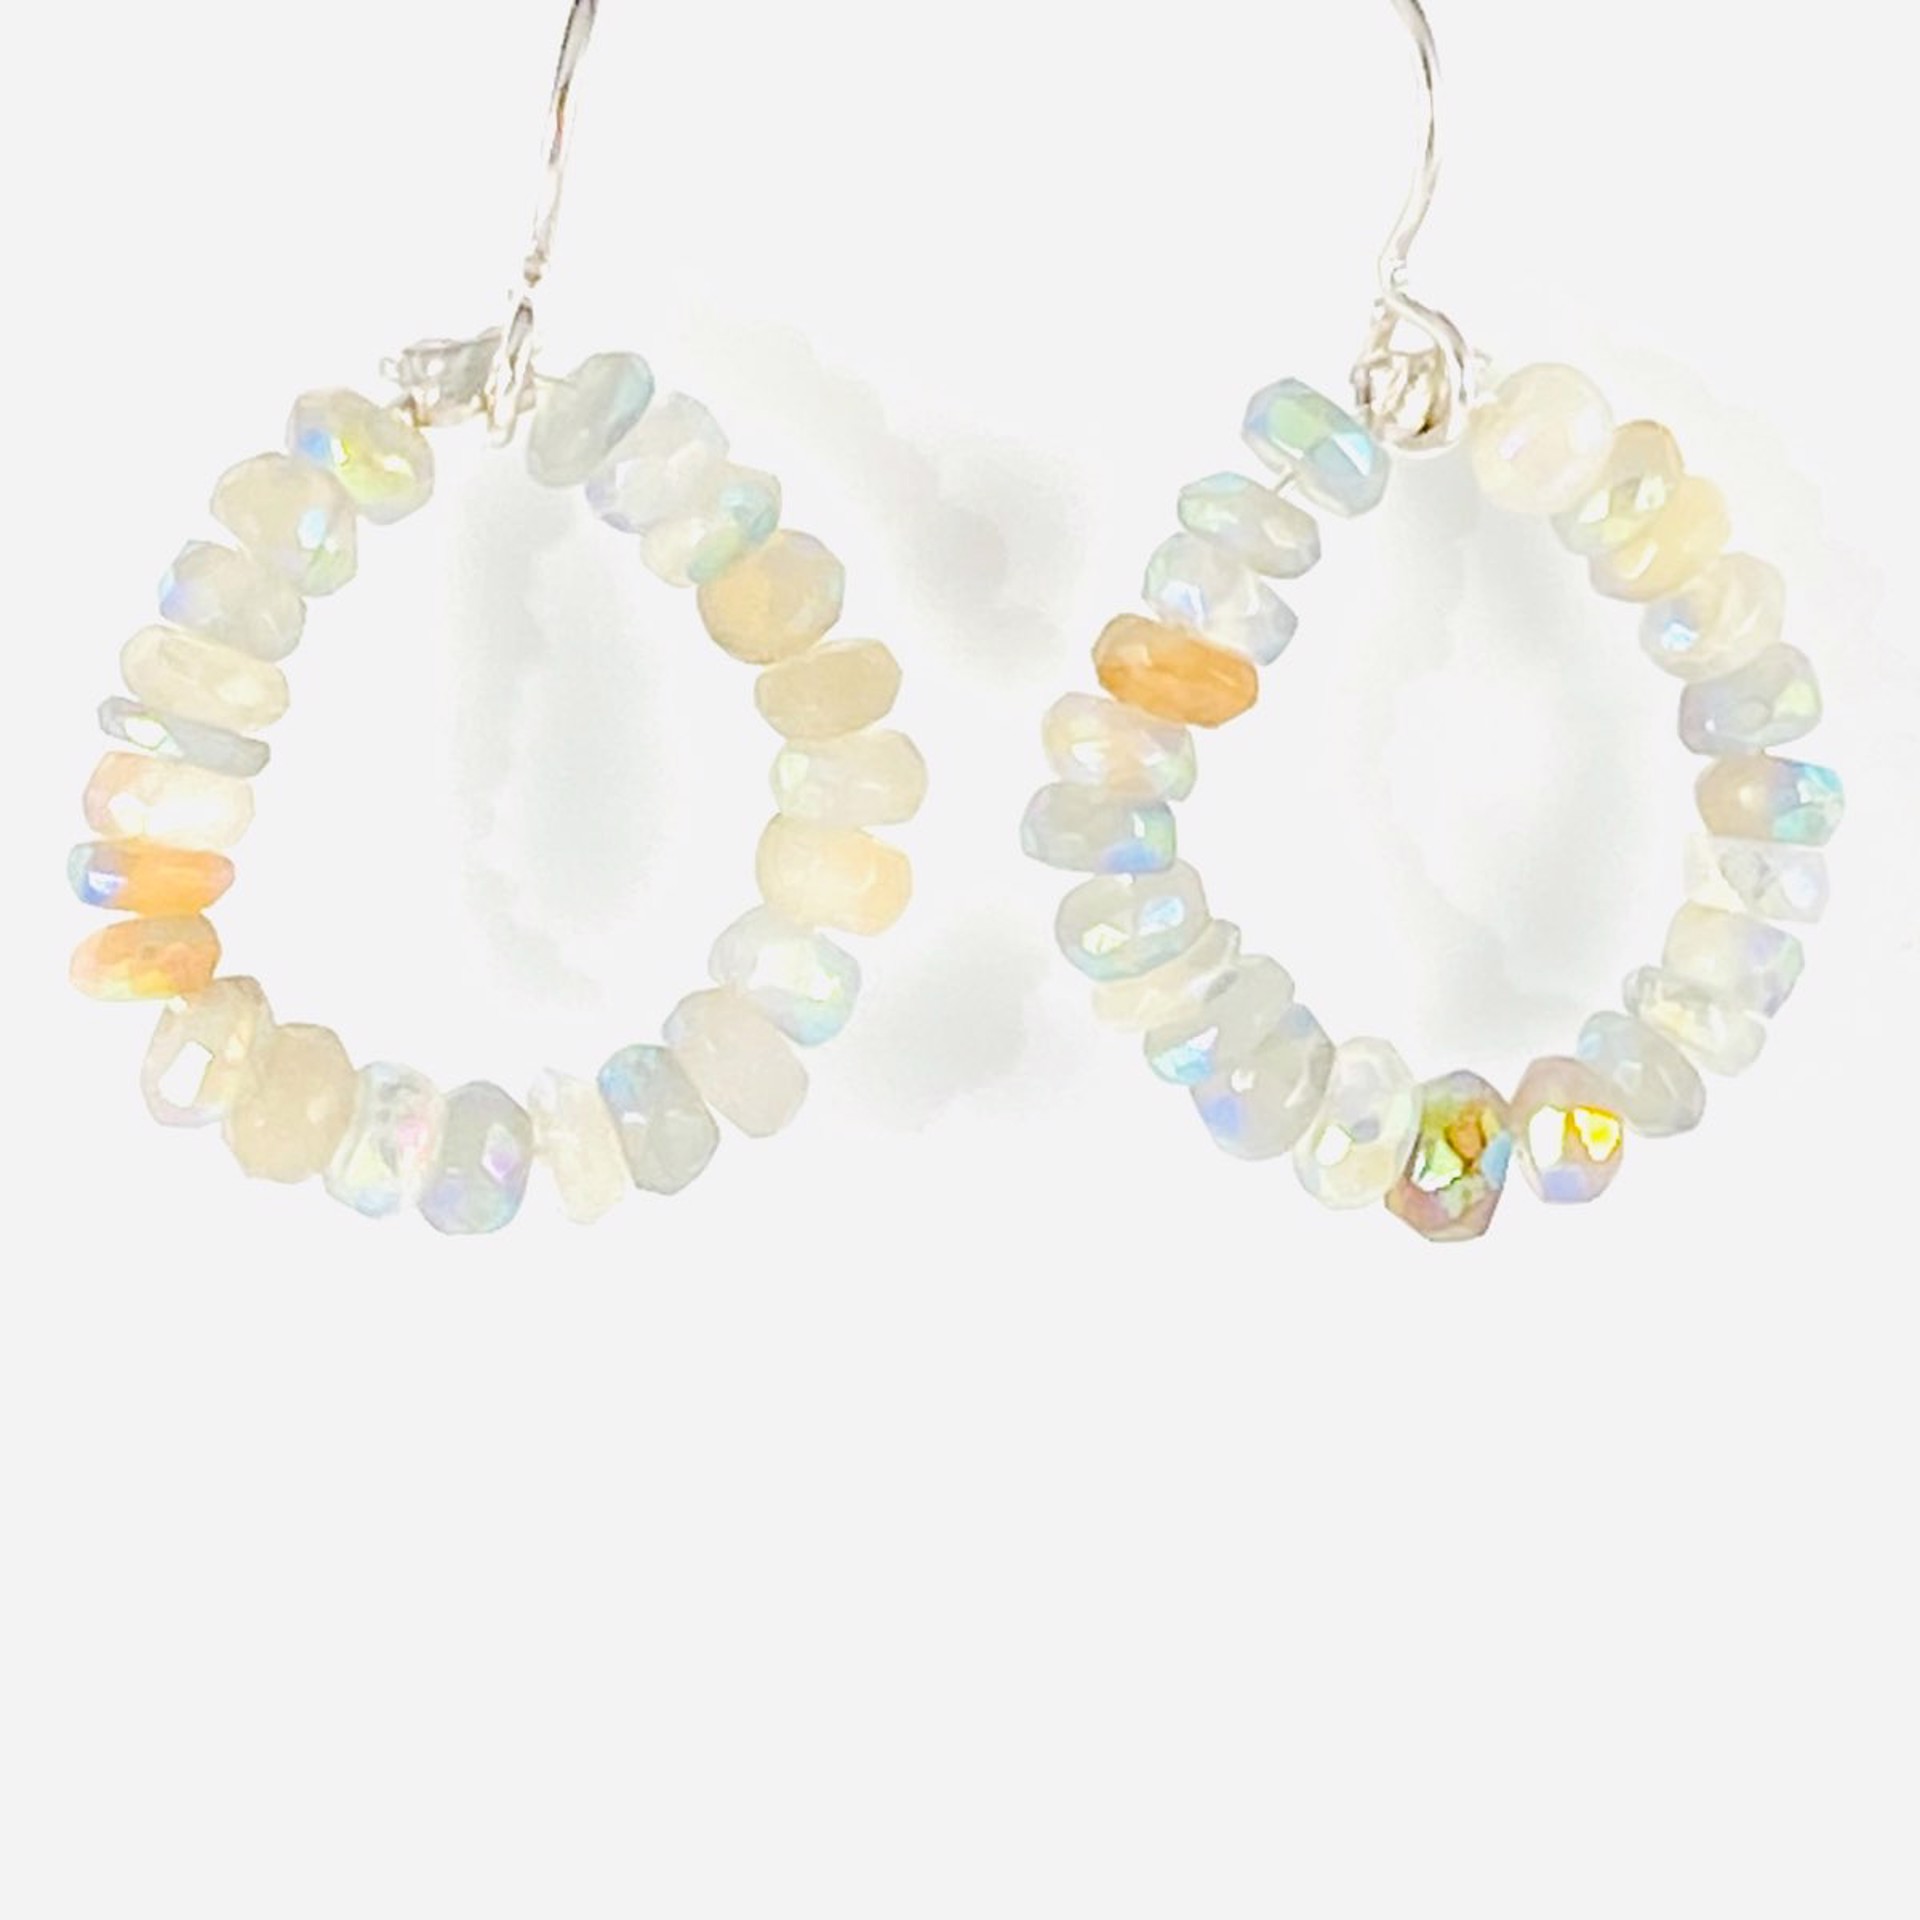 Gemstone Hoop Earrings by Linda Sacra